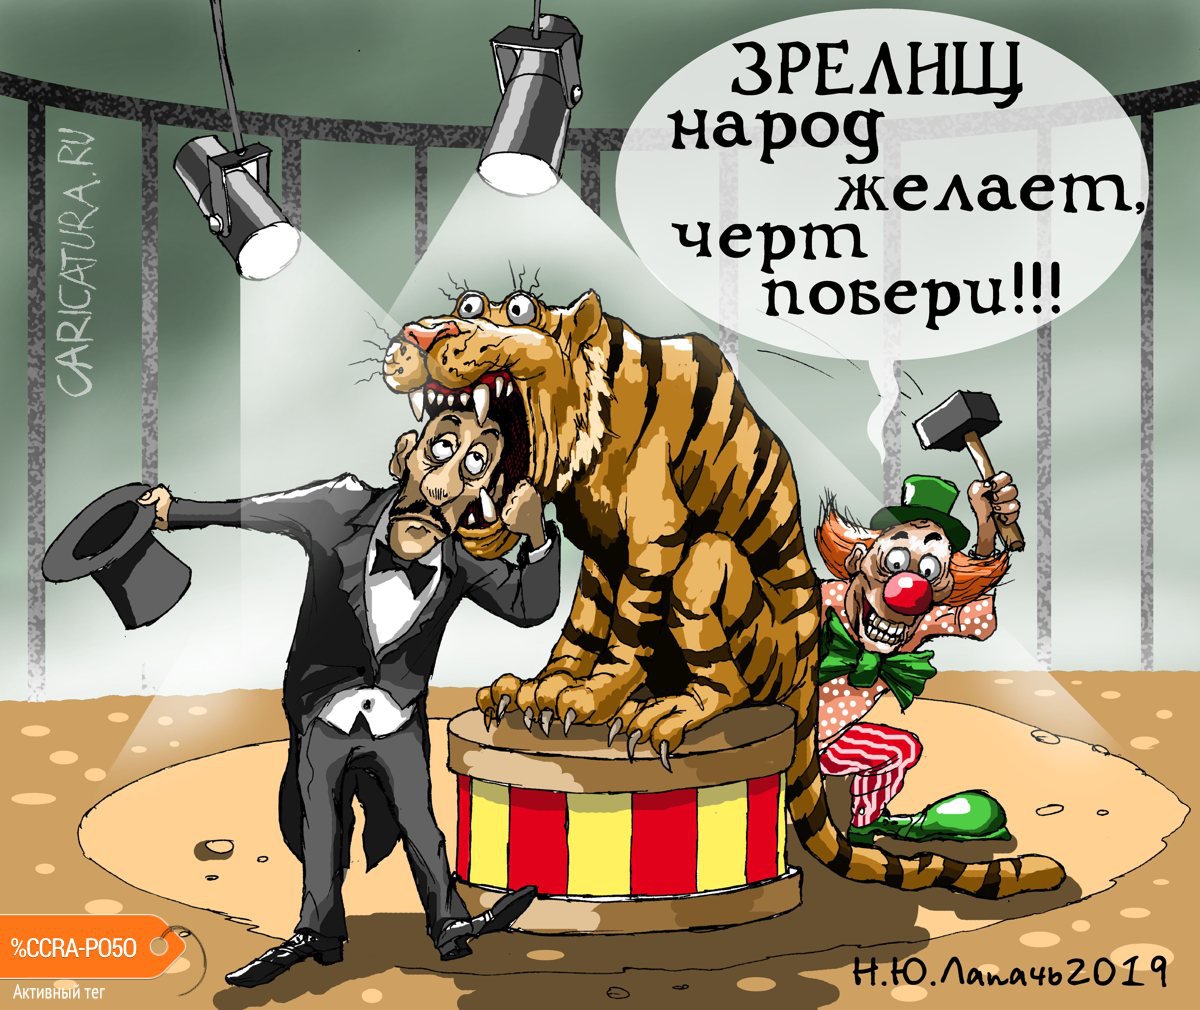 Карикатура "Шутка", Теплый Телогрей